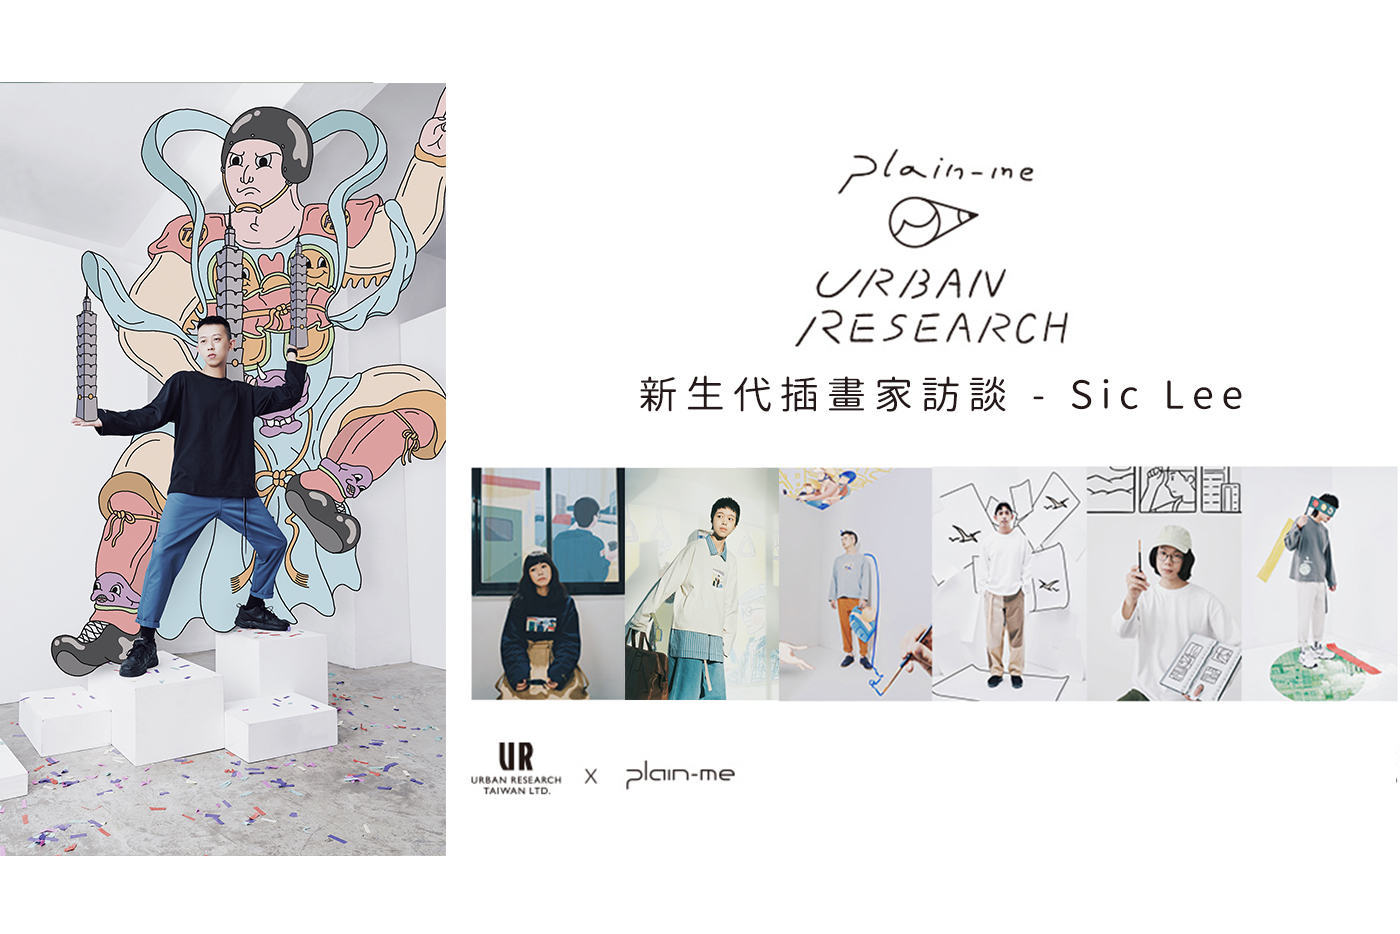 插畫家,台灣,城市,新生代插畫家,plain-me,URBAN RESEARCH,Sic Lee